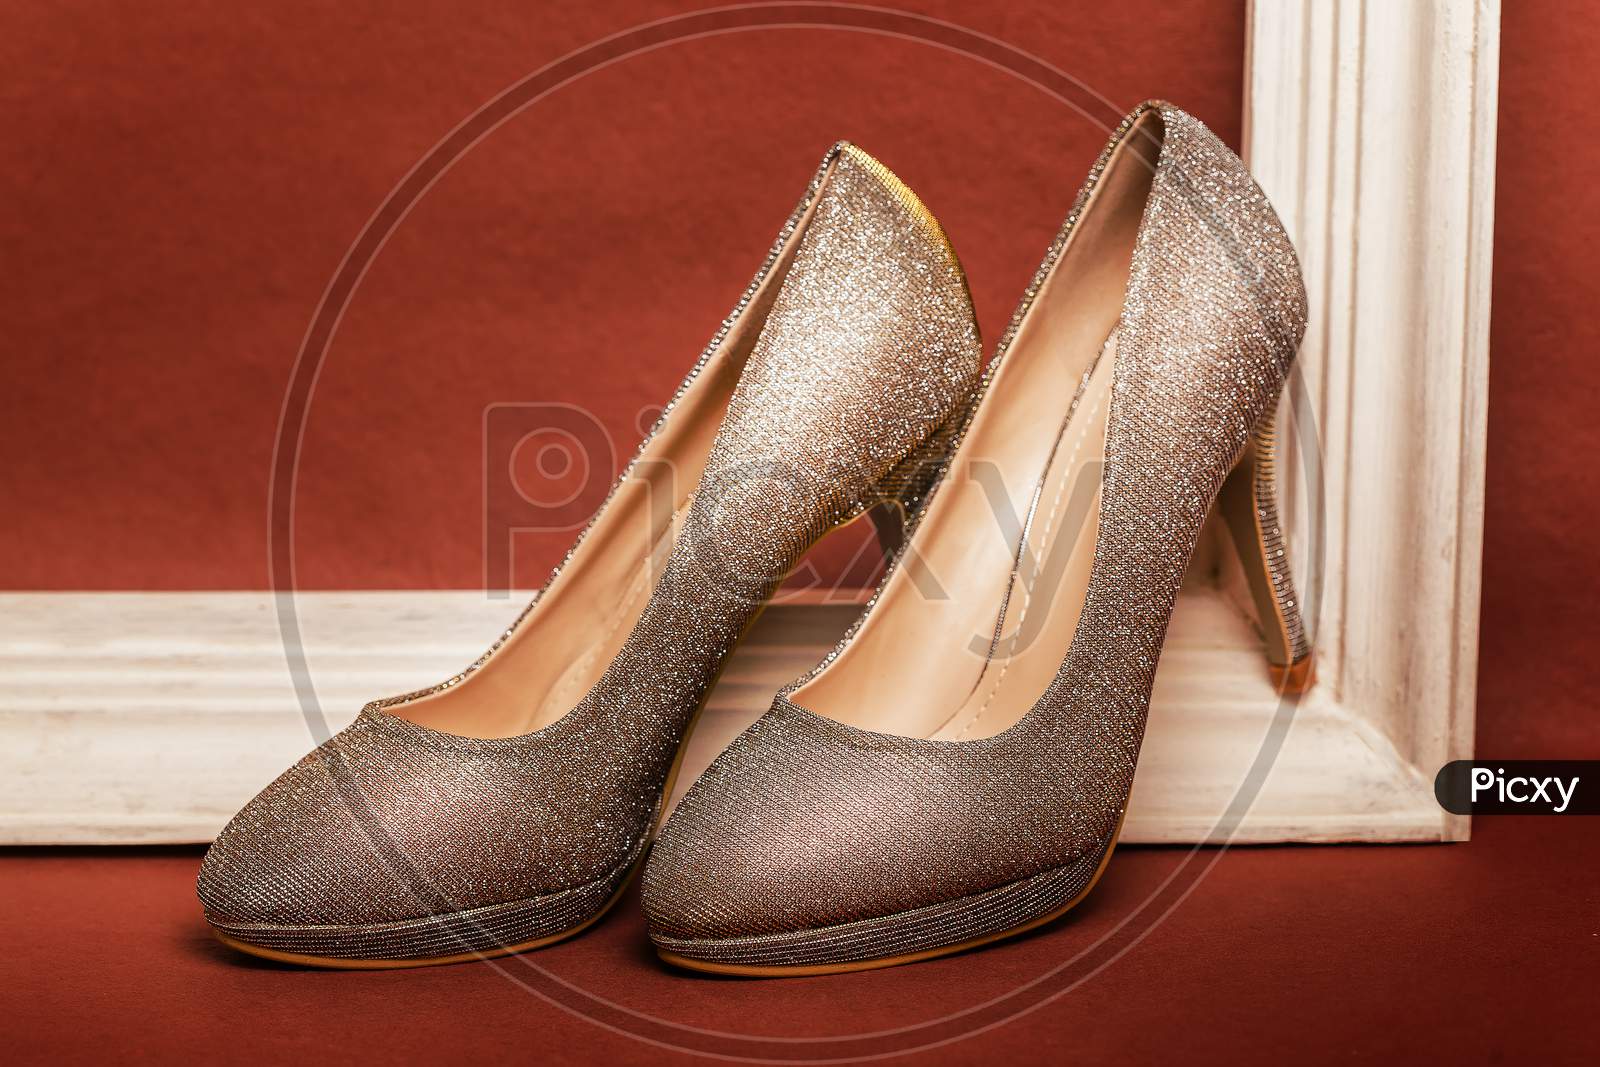 womens footwear sandals heels stilletos